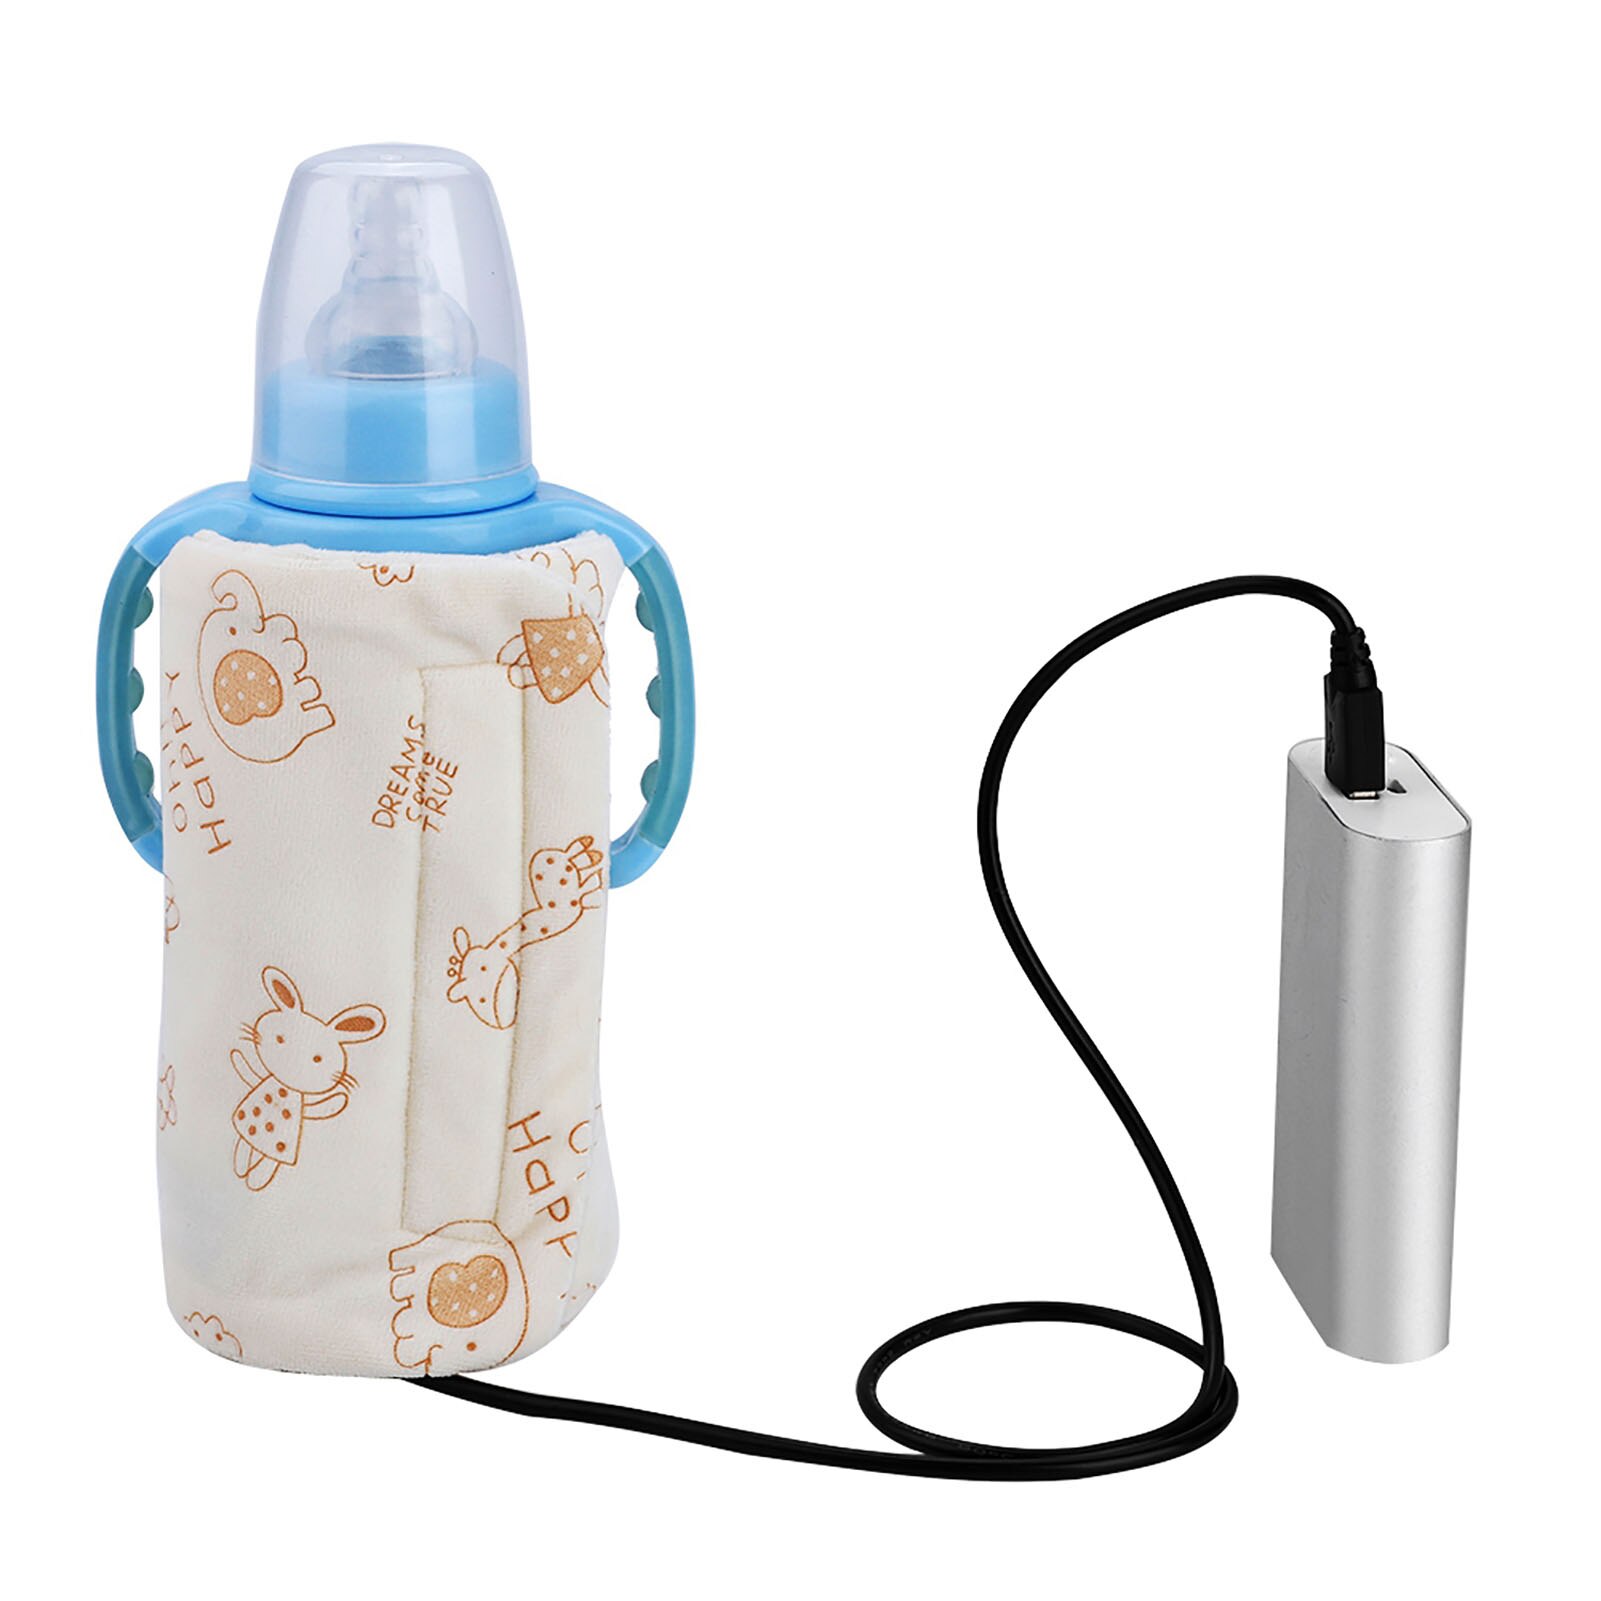 Usb baby mælk varmere bærbar rejse flaske varmere spædbarn fodring flaske taske isolering dække baby pleje flaske varmelegeme